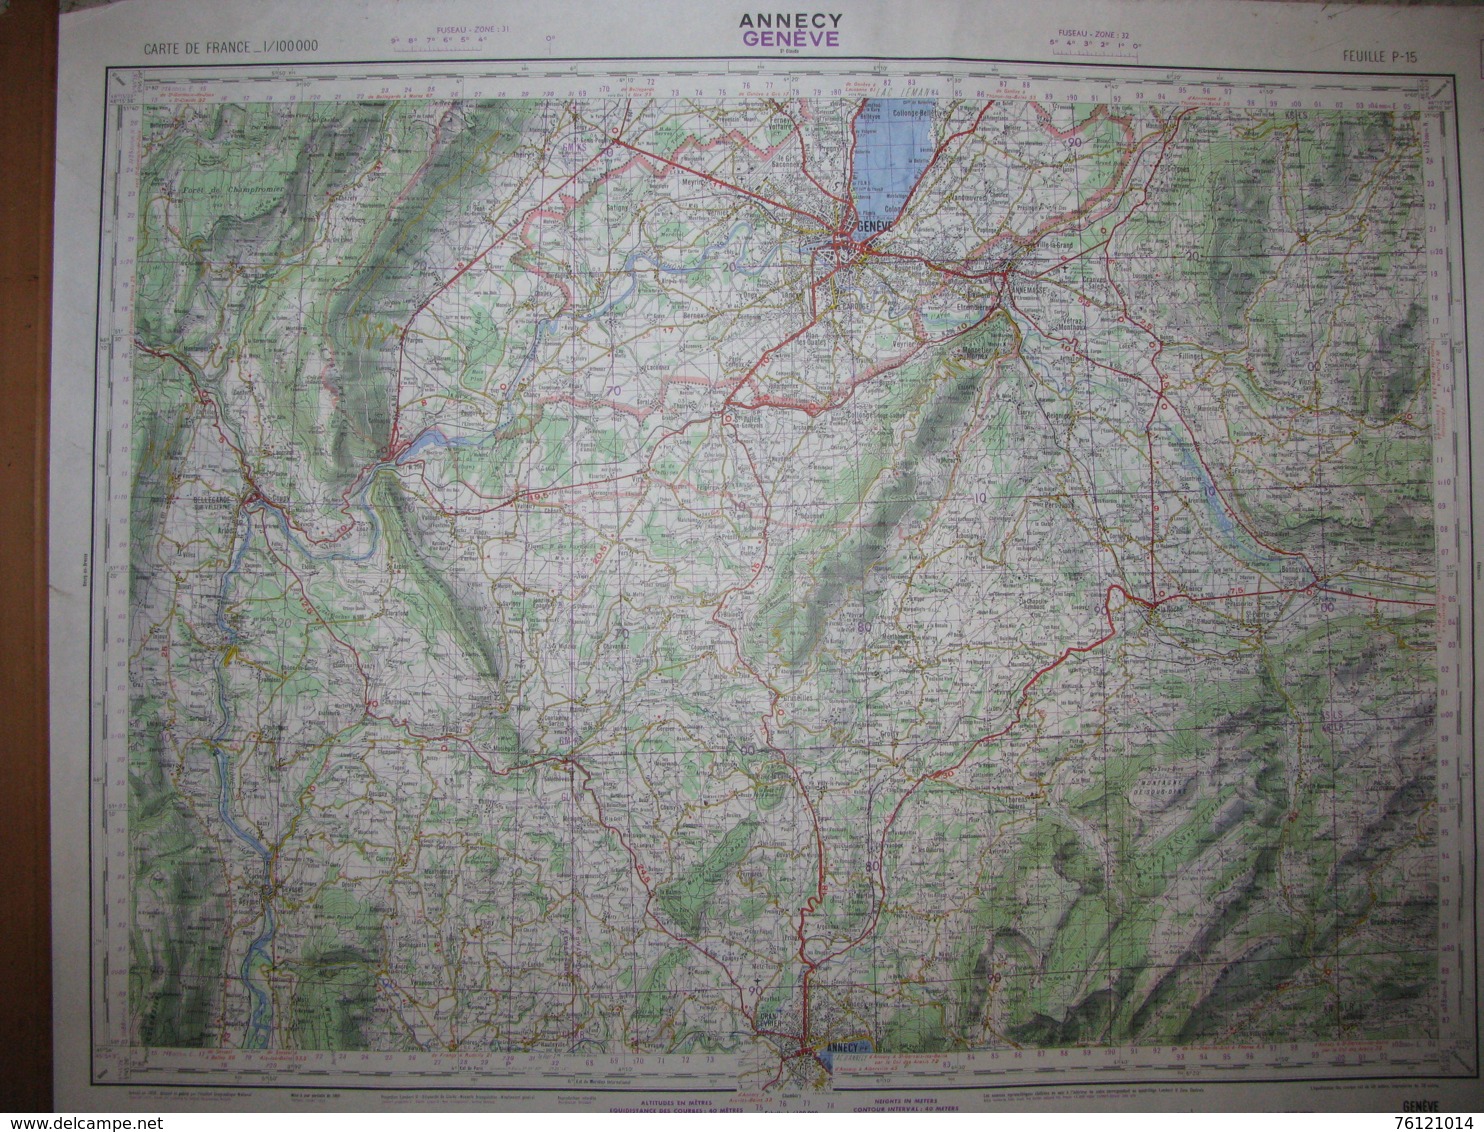 Annecy Genève Carte état Major 1/100000 1960 Bellegarde Bonneville Viu Zbrizon - Topographical Maps